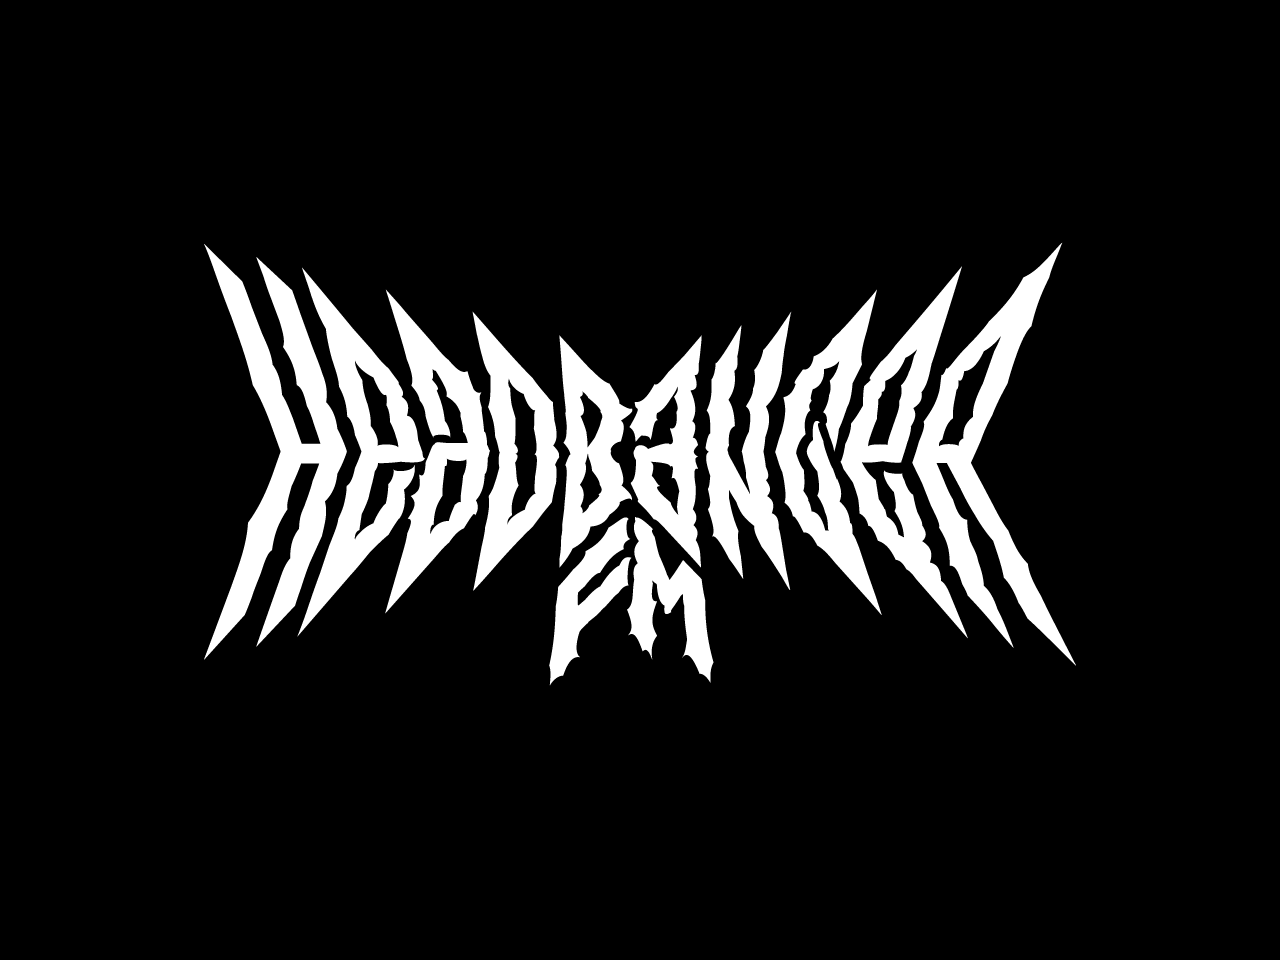 Headbanger_FM